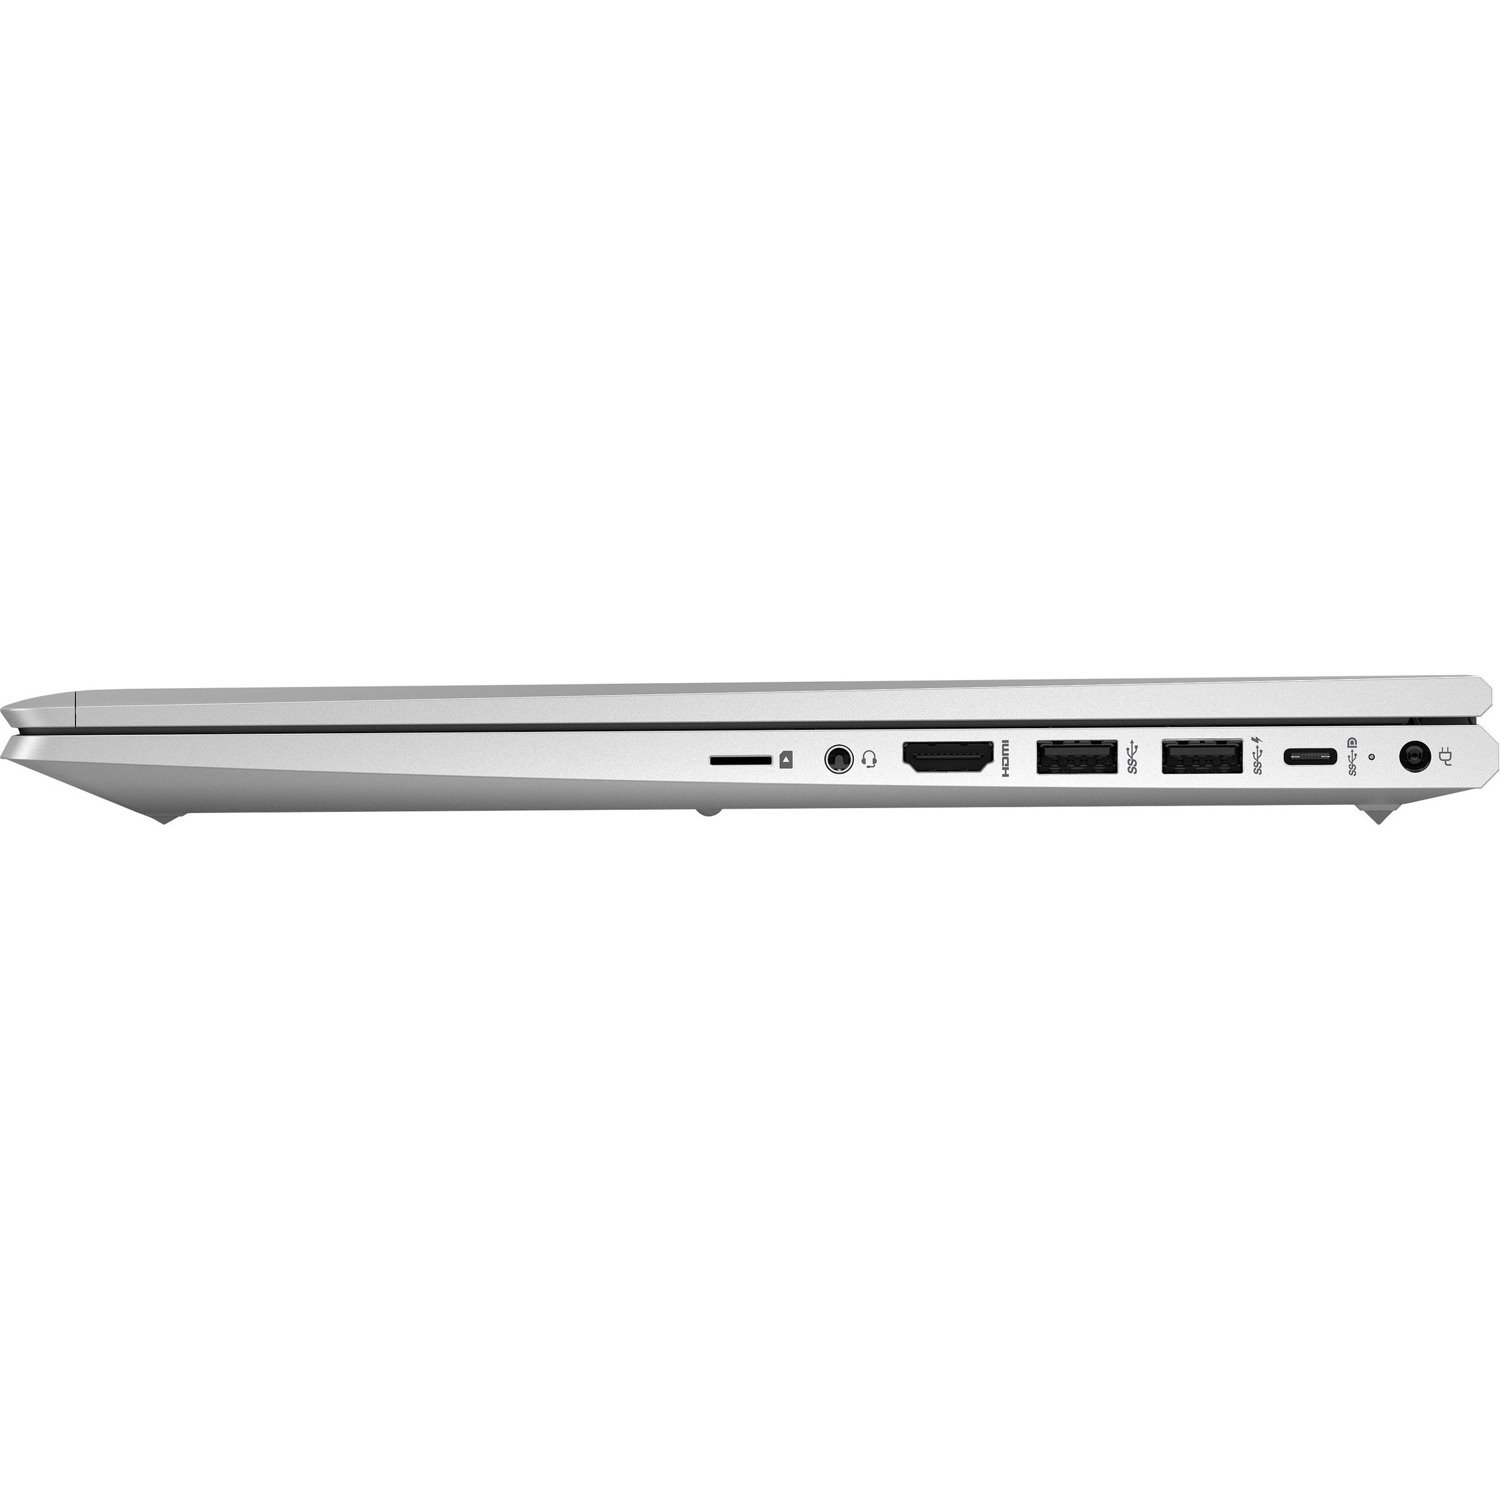 HP ProBook 650 G8 LTE Advanced, UMTS, HSPA+, DC-HSPA+ 15.6" Notebook - Full HD - 1920 x 1080 - Intel Core i5 11th Gen i5-1135G7 Quad-core (4 Core) - 8 GB Total RAM - 256 GB SSD